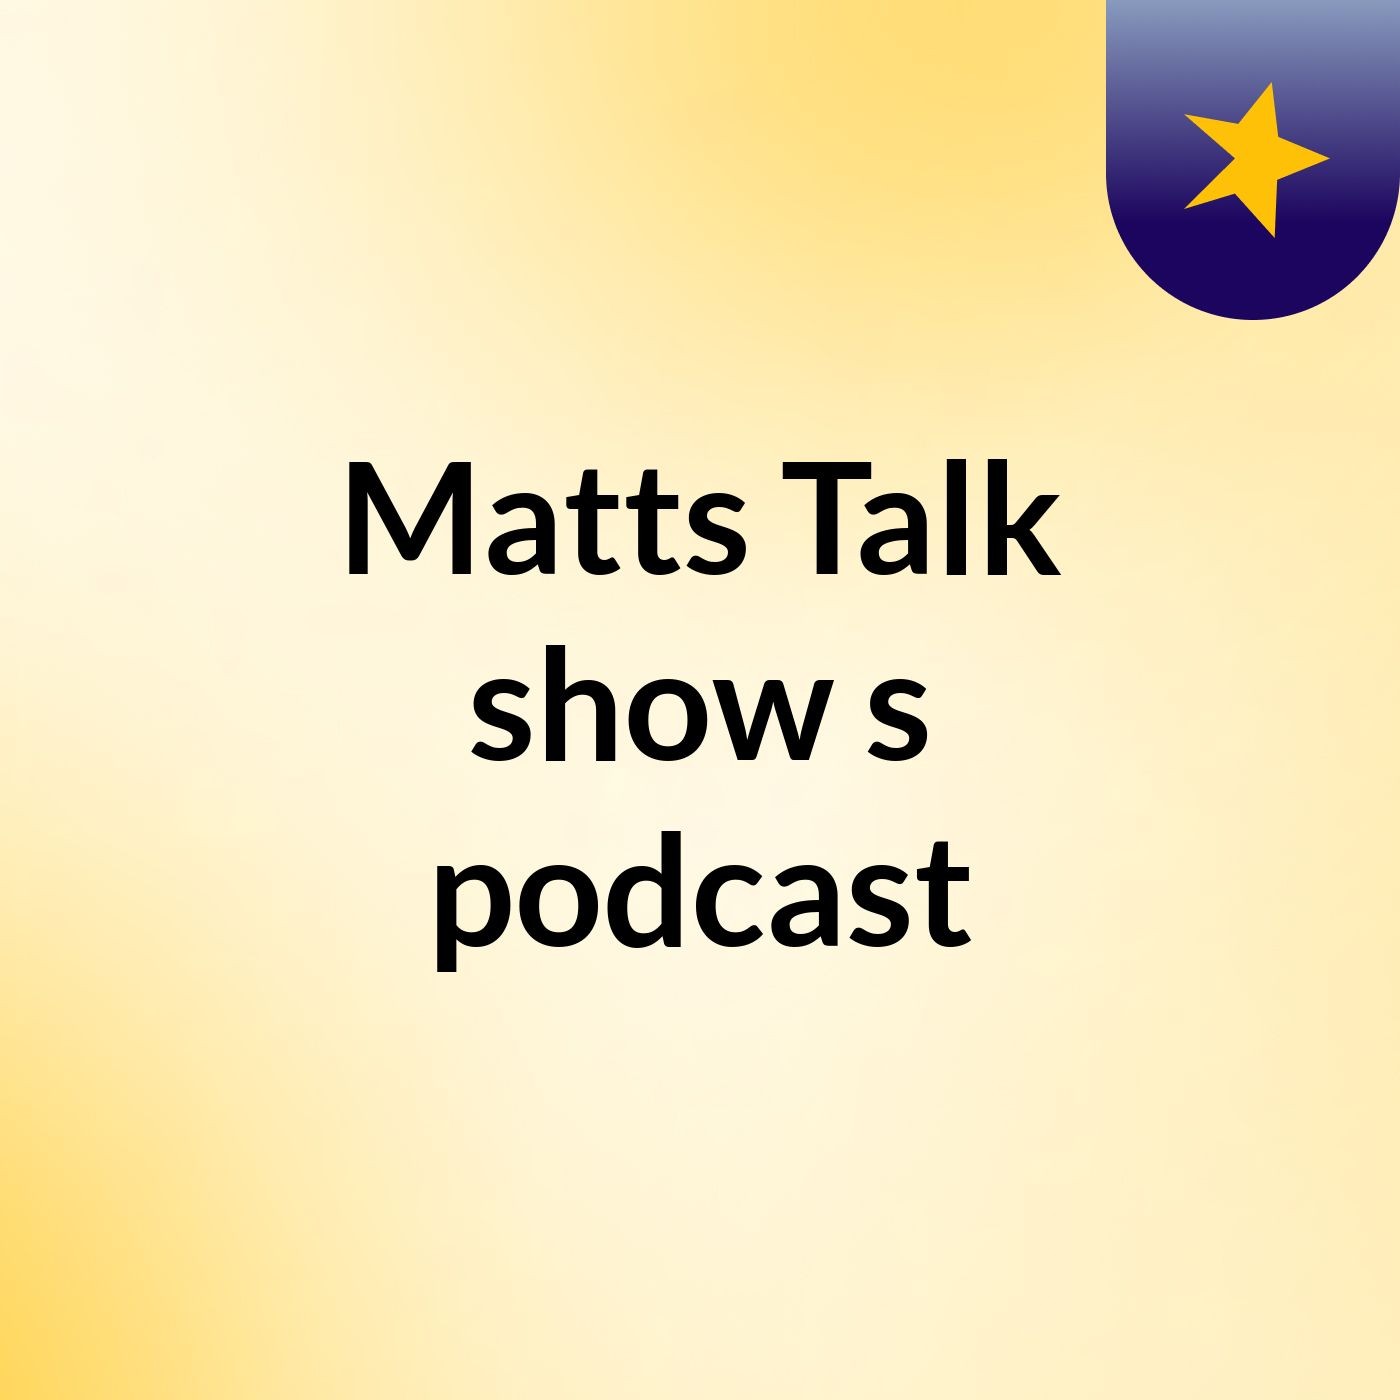 Episode 3 - Matts Talk show's podcast